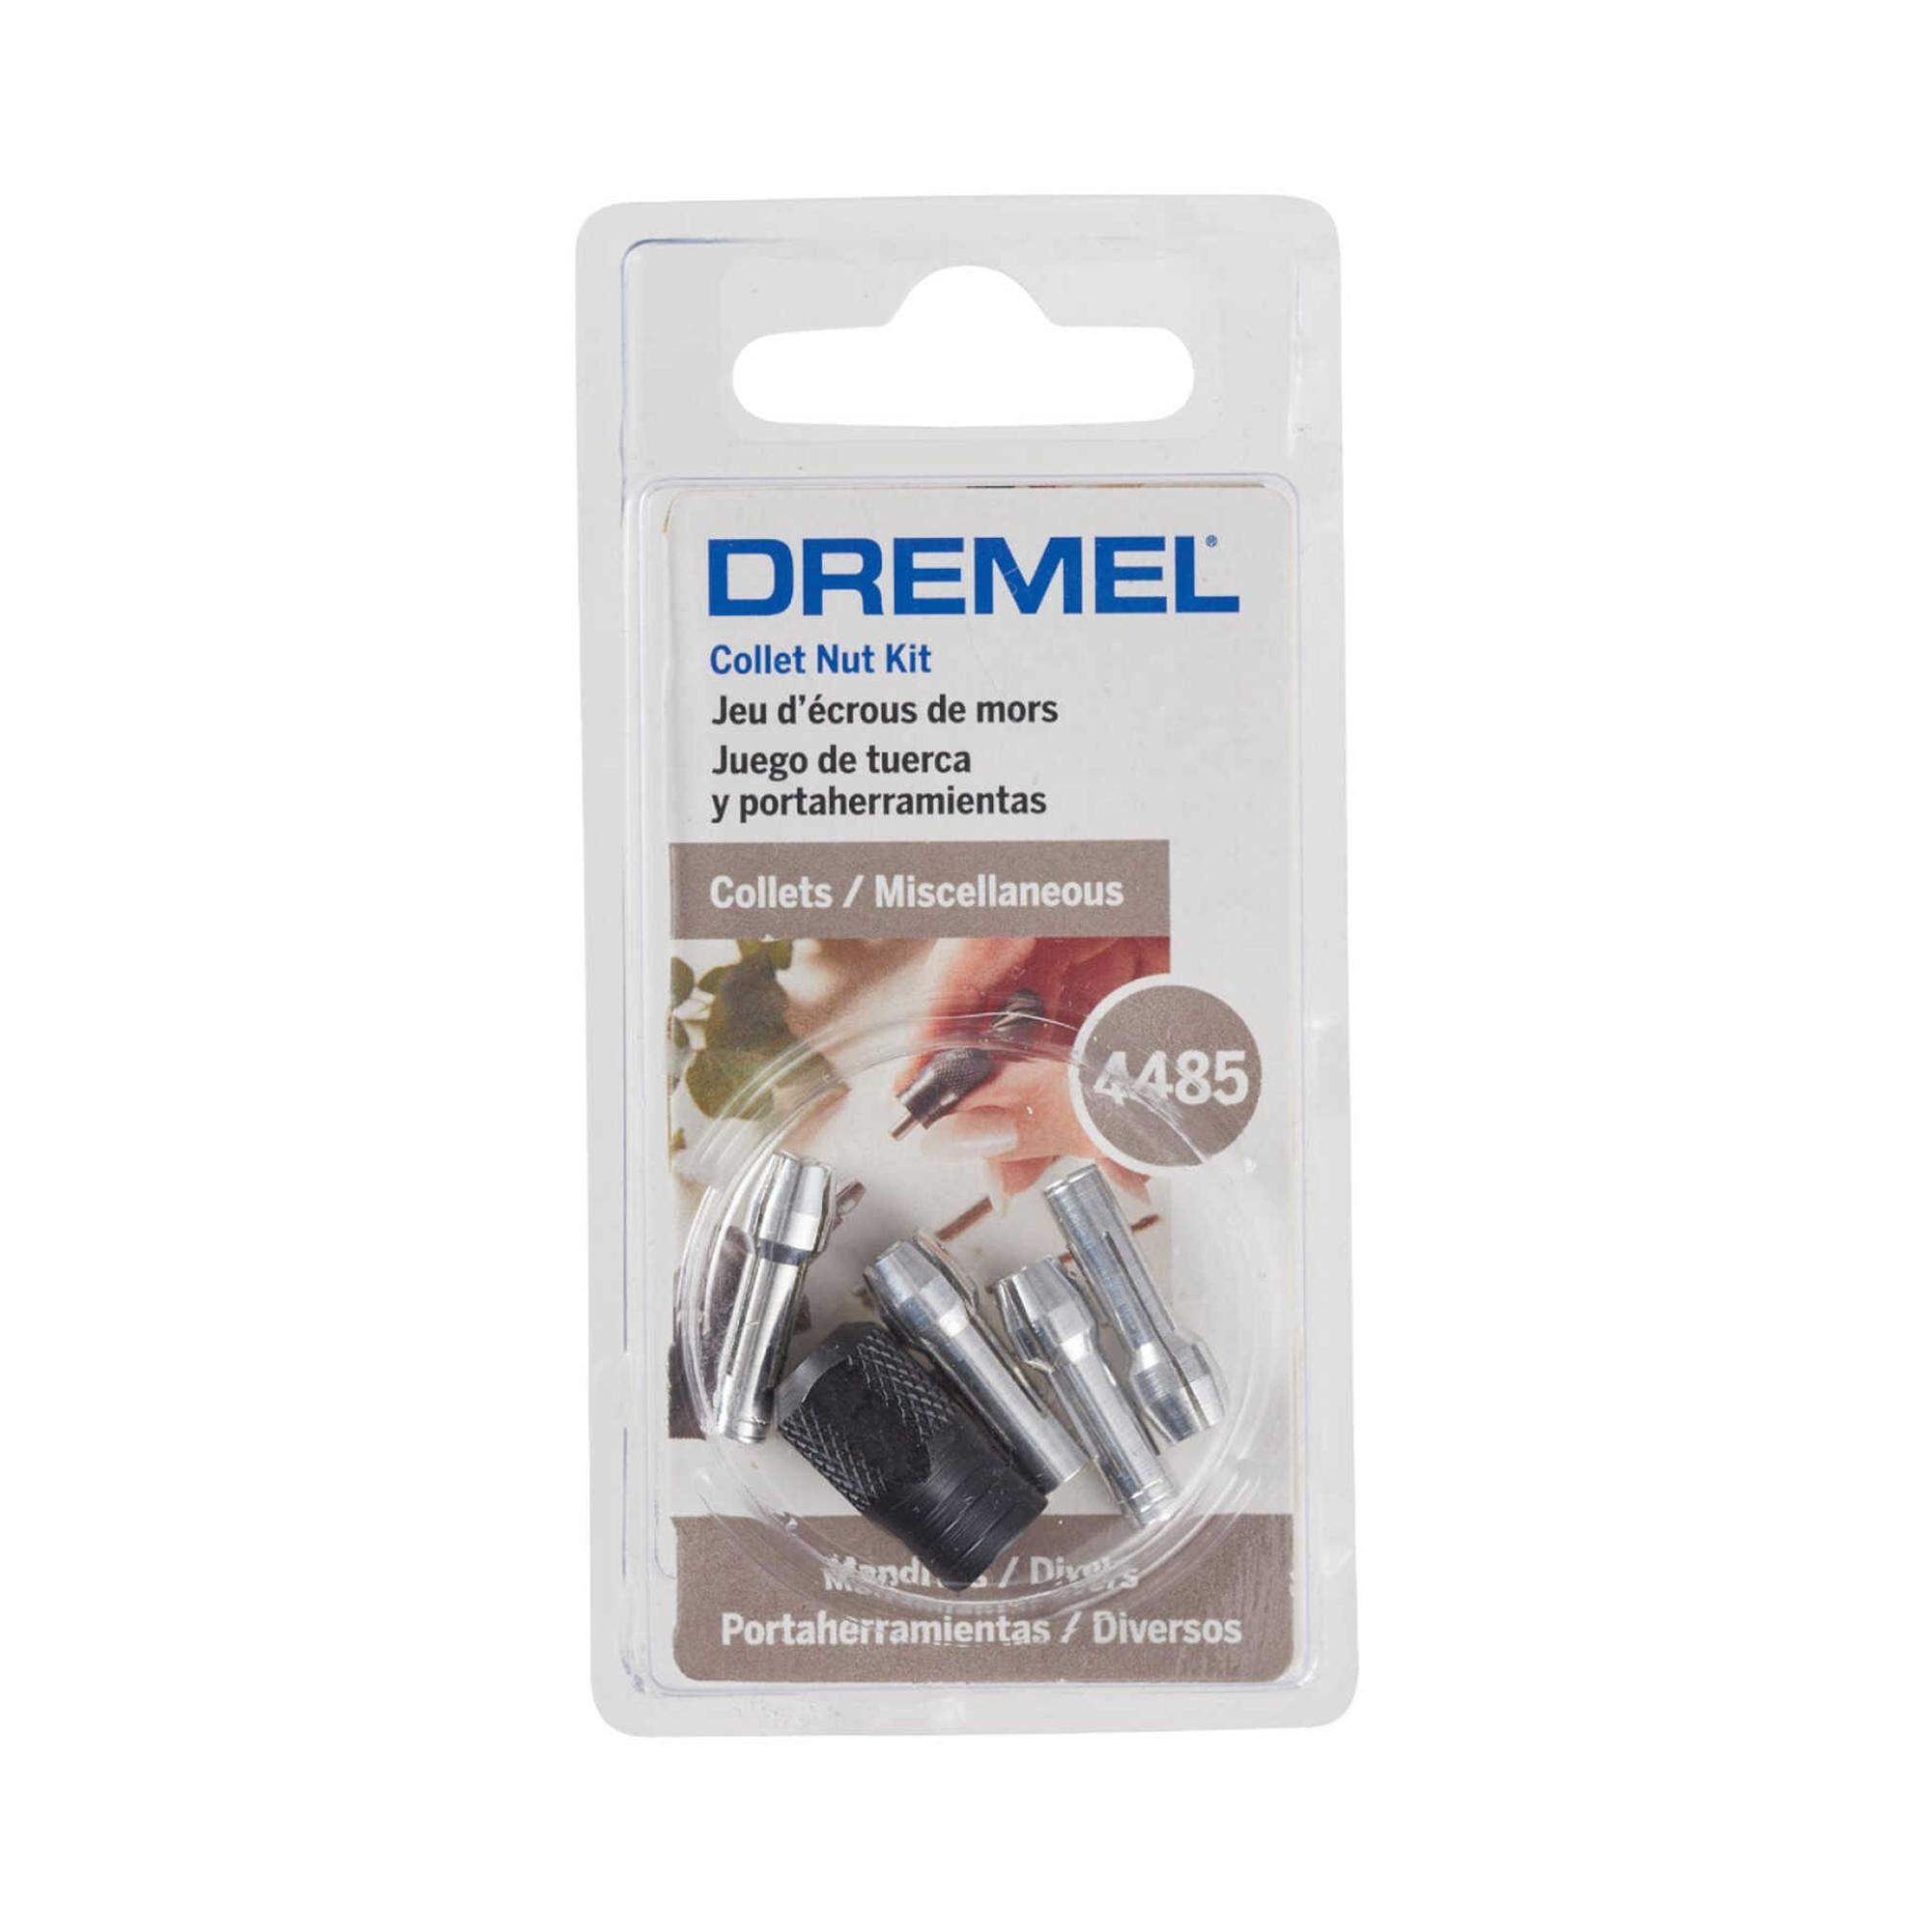 Dremel 575 (2.615.057.5AD) Right Angle Attachment